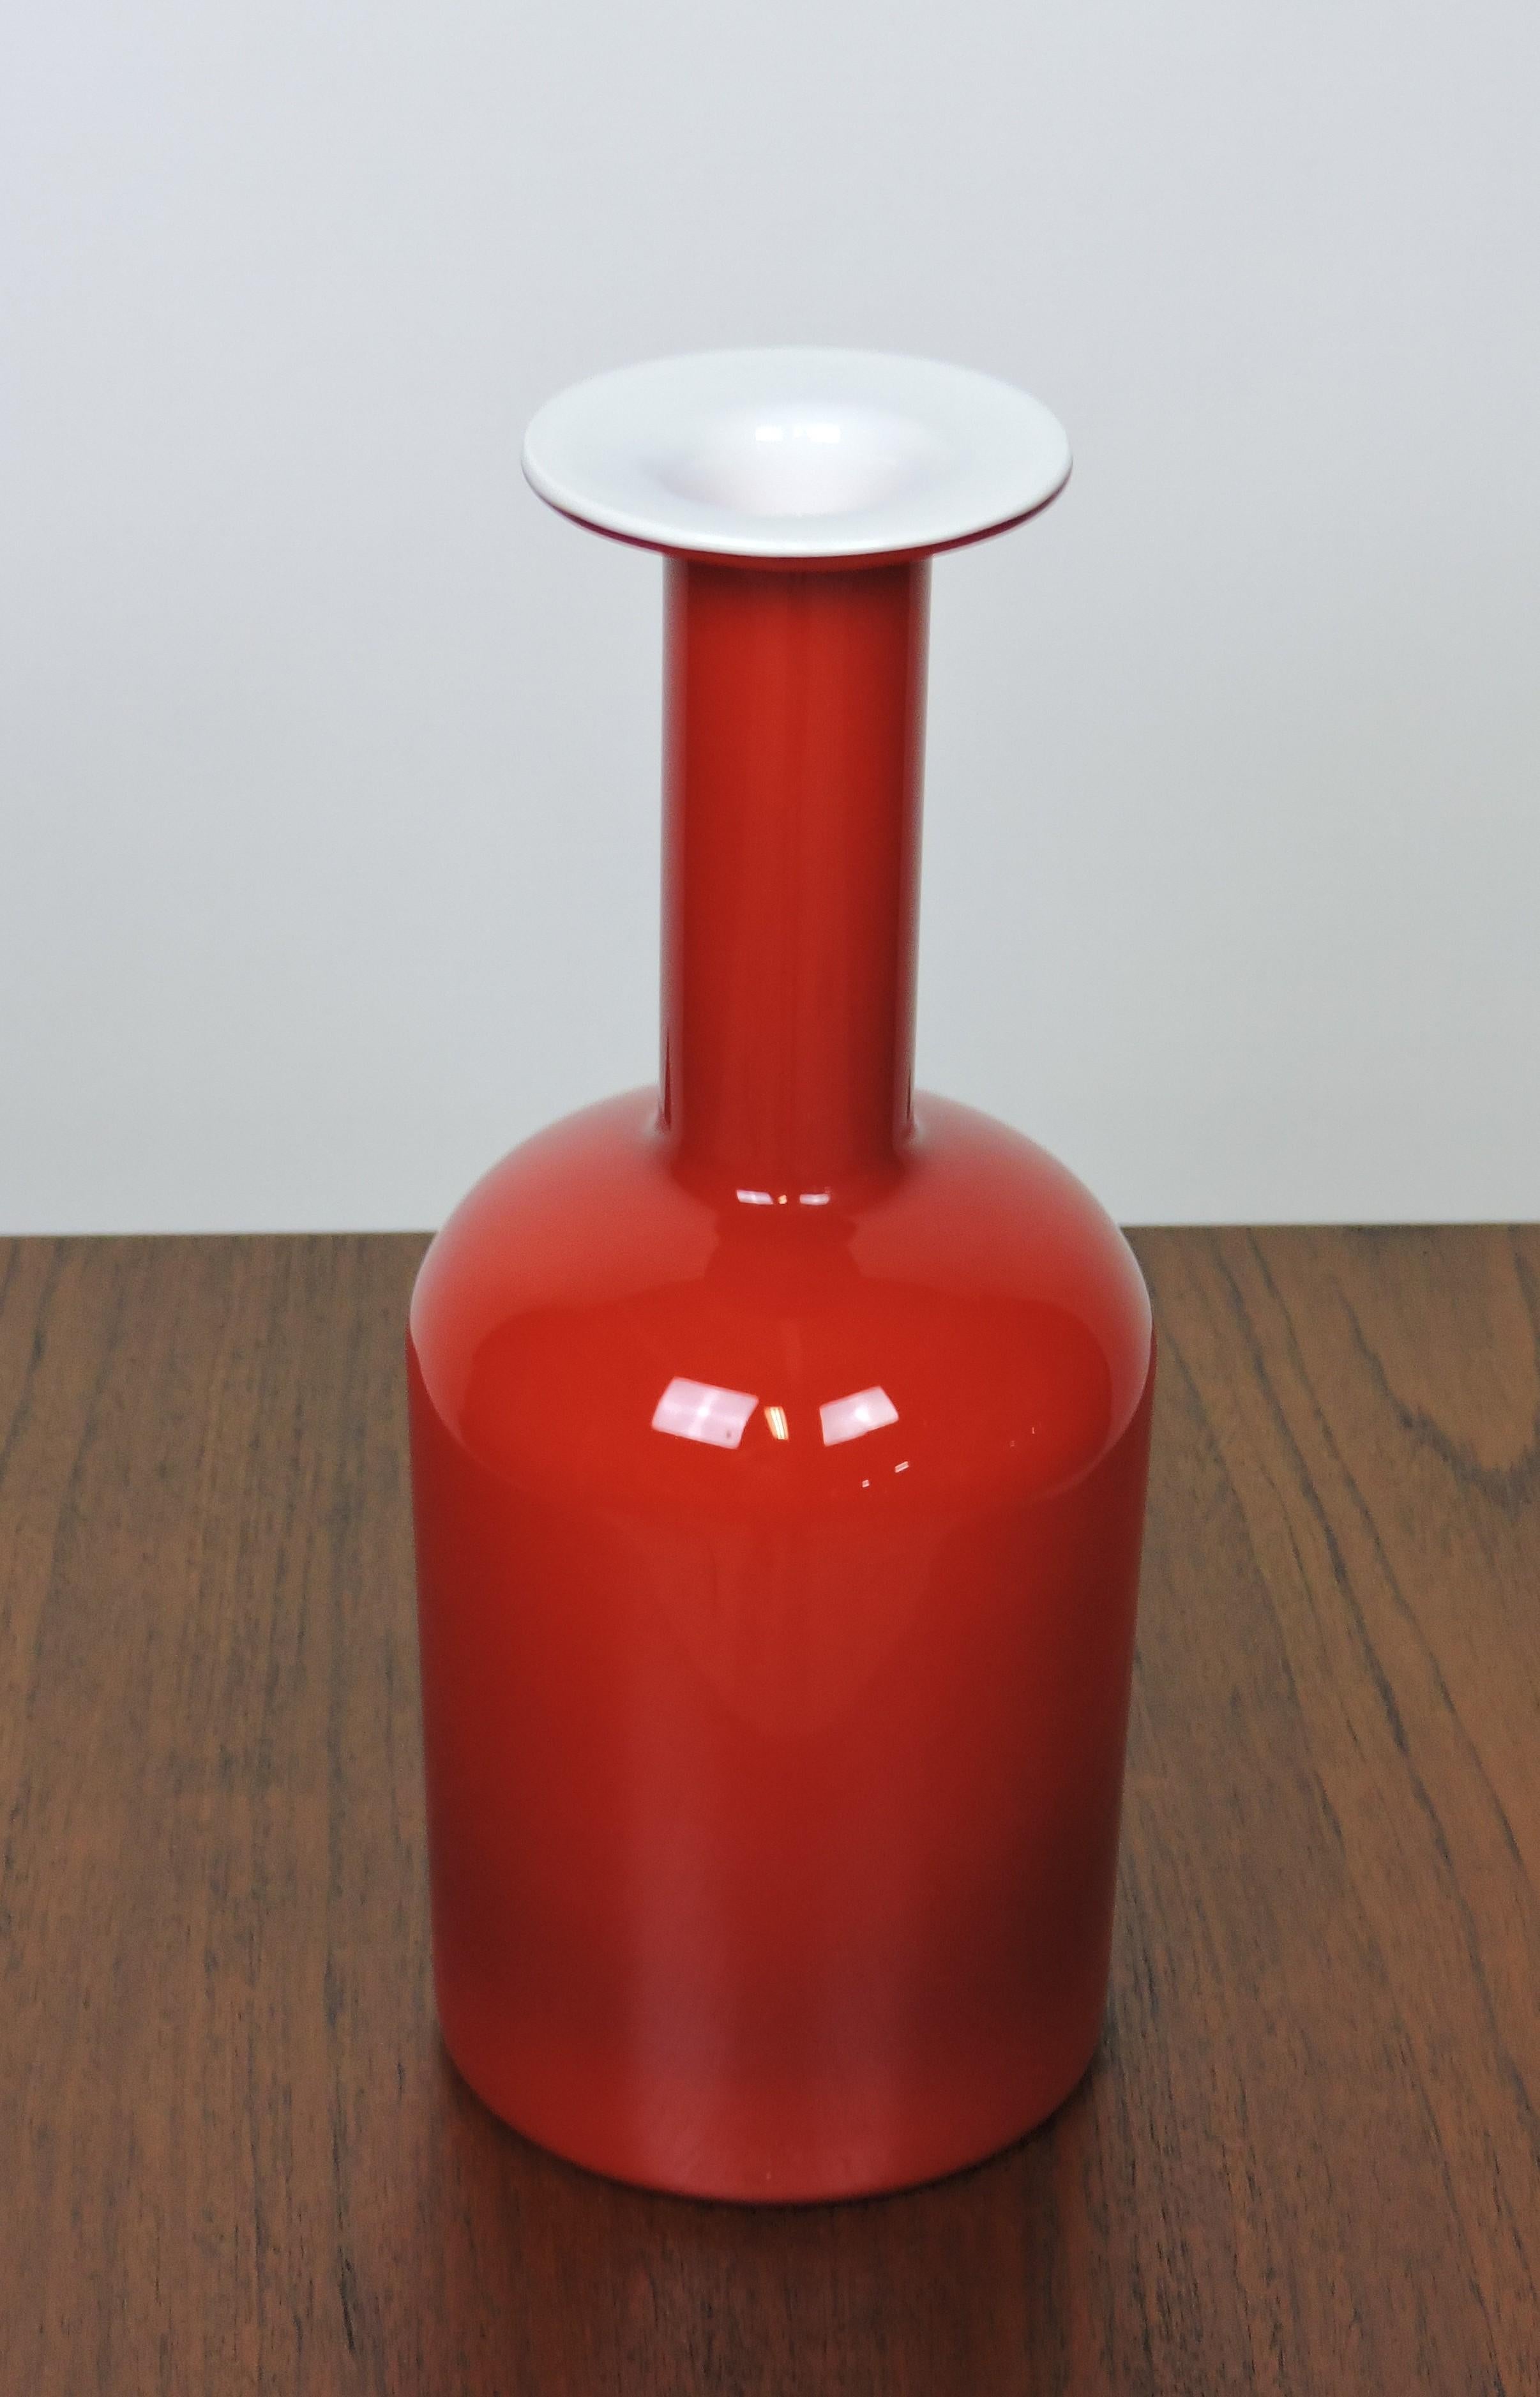 Grand Gulvase emblématique en verre moulé, conçu par Otto Brauer et fabriqué au Danemark par Holmegaard. Ce vase est de taille moyenne et présente un extérieur rouge et un intérieur blanc. La dernière photo le montre avec un vase suédois ARGENTA qui